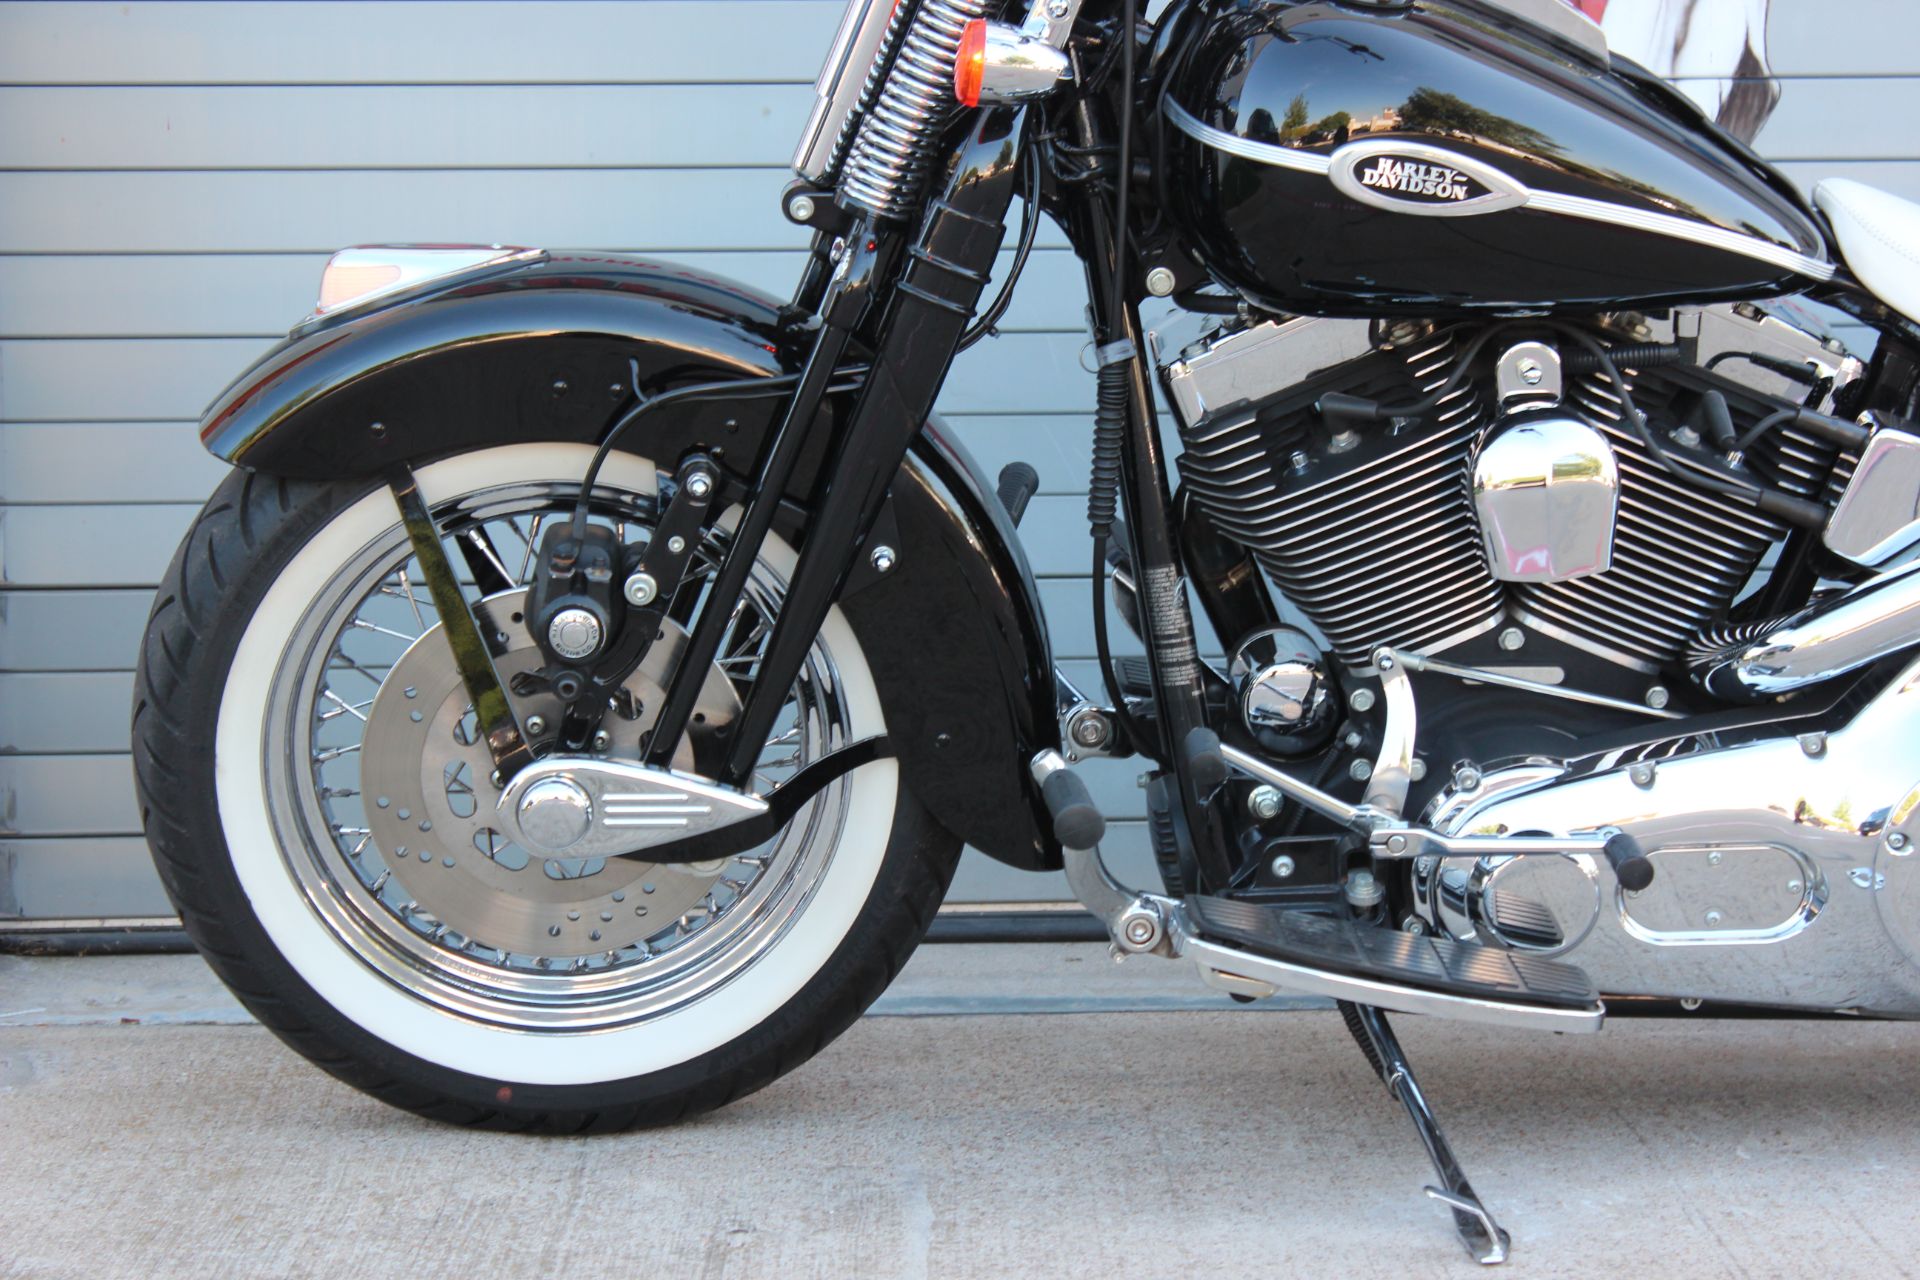 2005 Harley-Davidson FLSTSC/FLSTSCI Softail® Springer® Classic in Grand Prairie, Texas - Photo 14